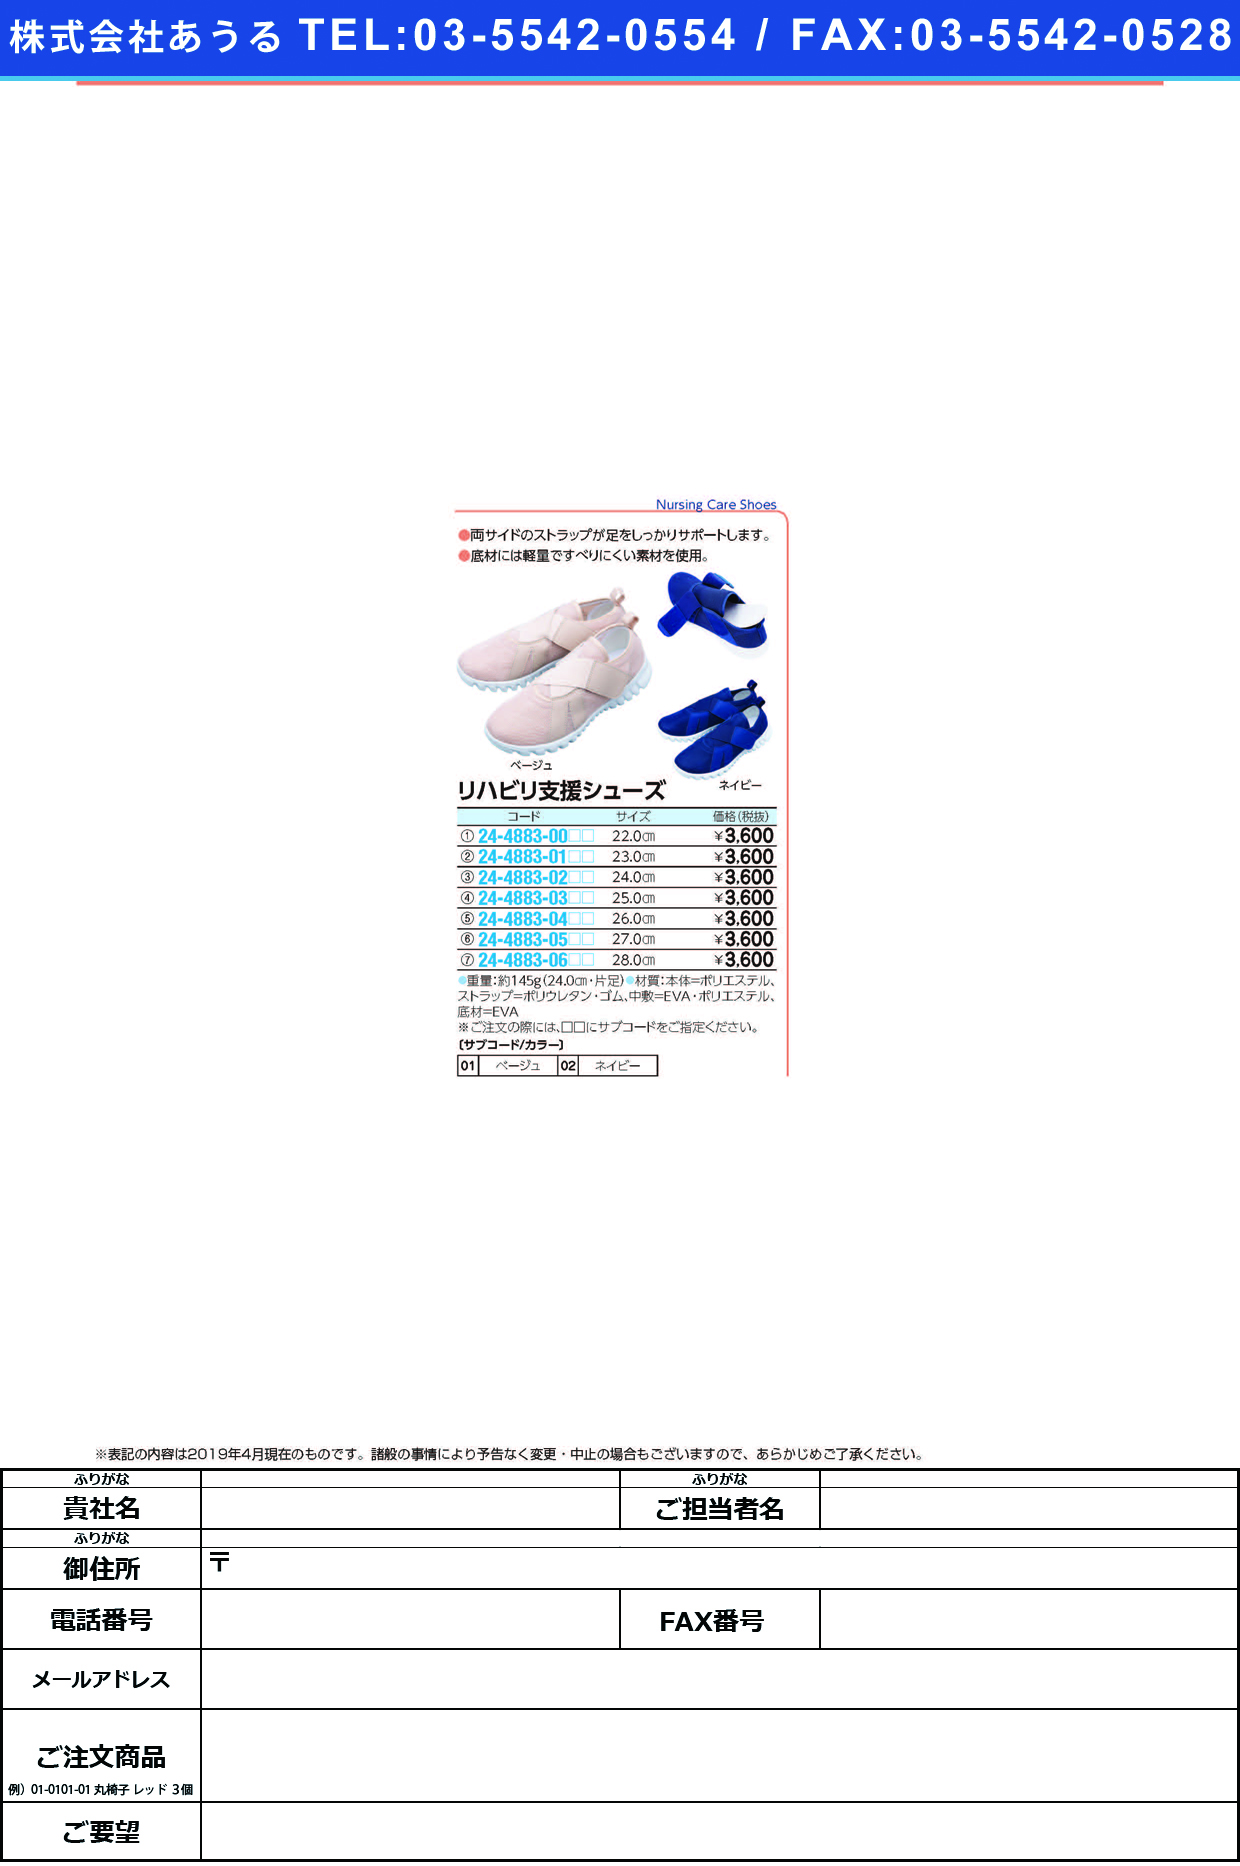 (24-4883-00)リハビリ支援シューズ 22.0CM ﾘﾊﾋﾞﾘｼｴﾝｼｭｰｽﾞ ネイビー【1足単位】【2019年カタログ商品】